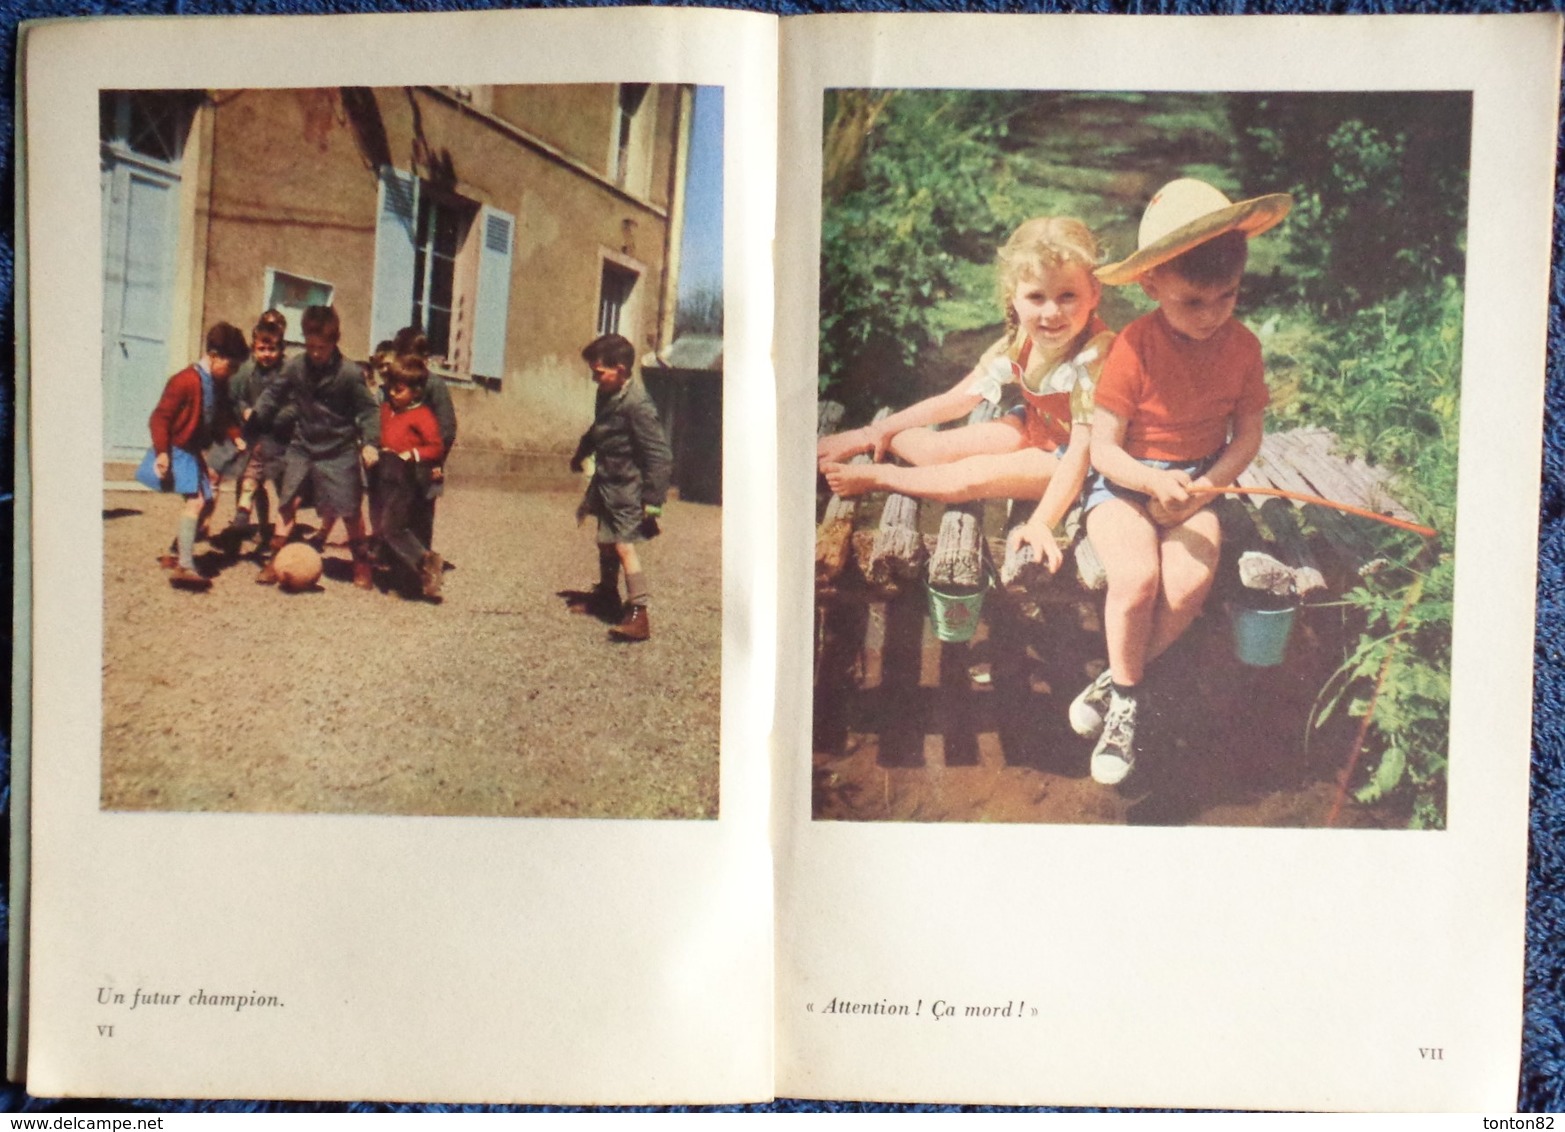 L.M. Bréant & B. Thierry - Nous les enfants - Librairie Armand Colin - ( 1955 ) .